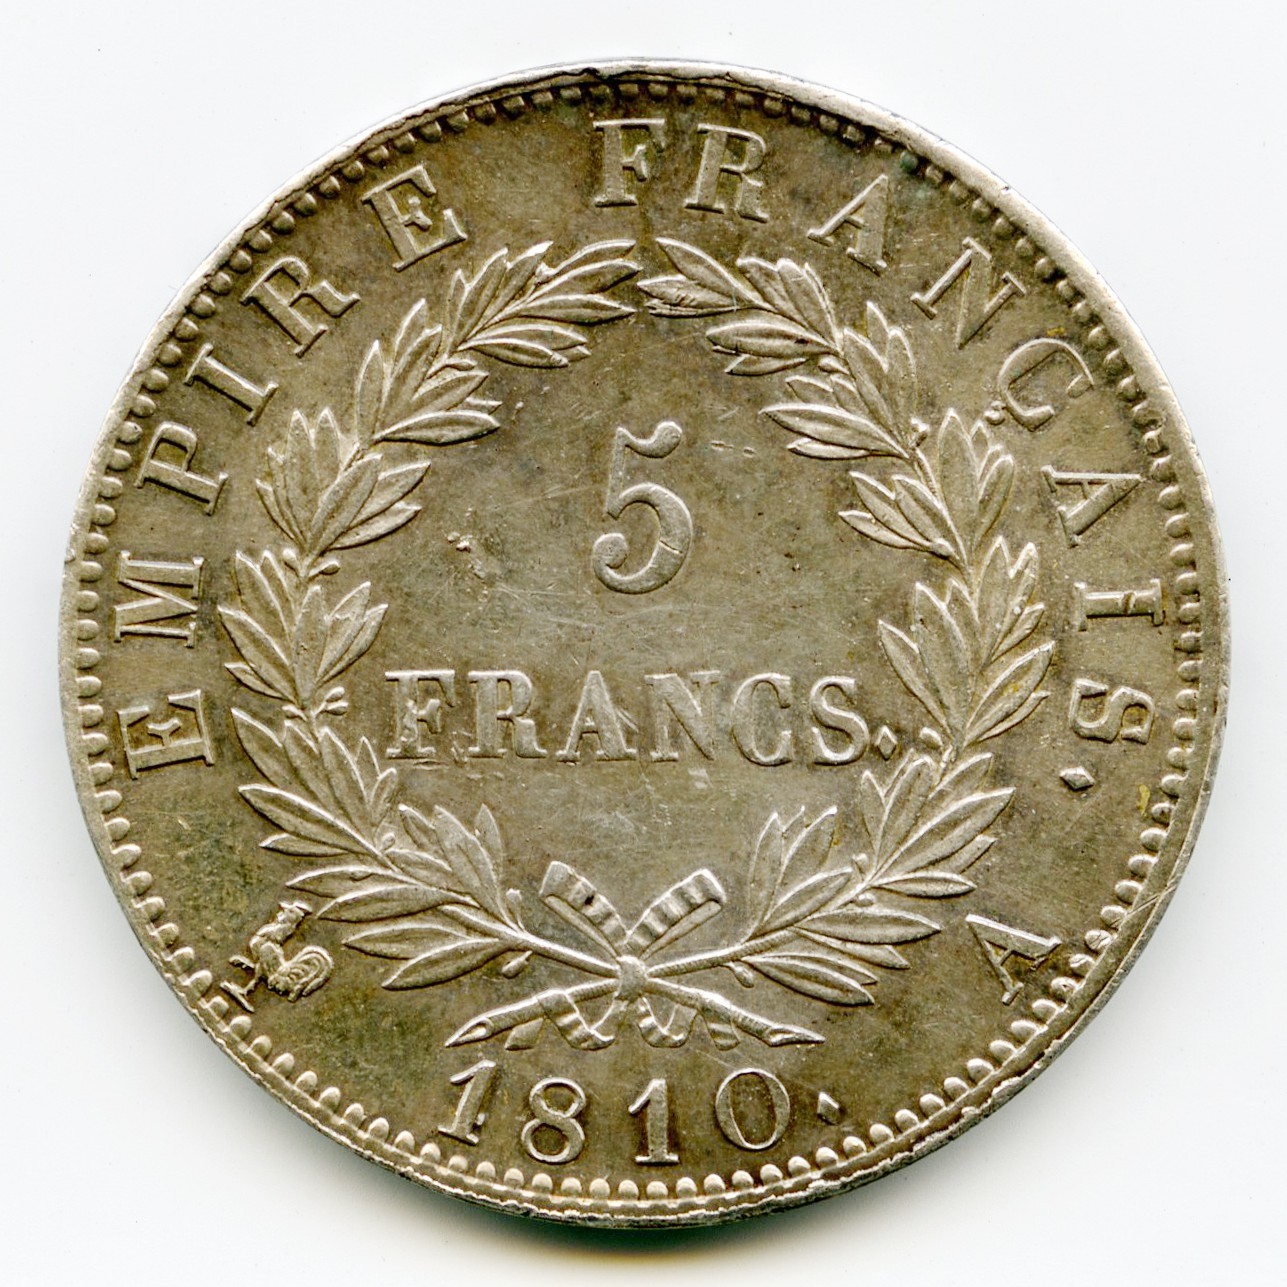 Napoléon Ier - 5 Francs - 1810 - Paris revers